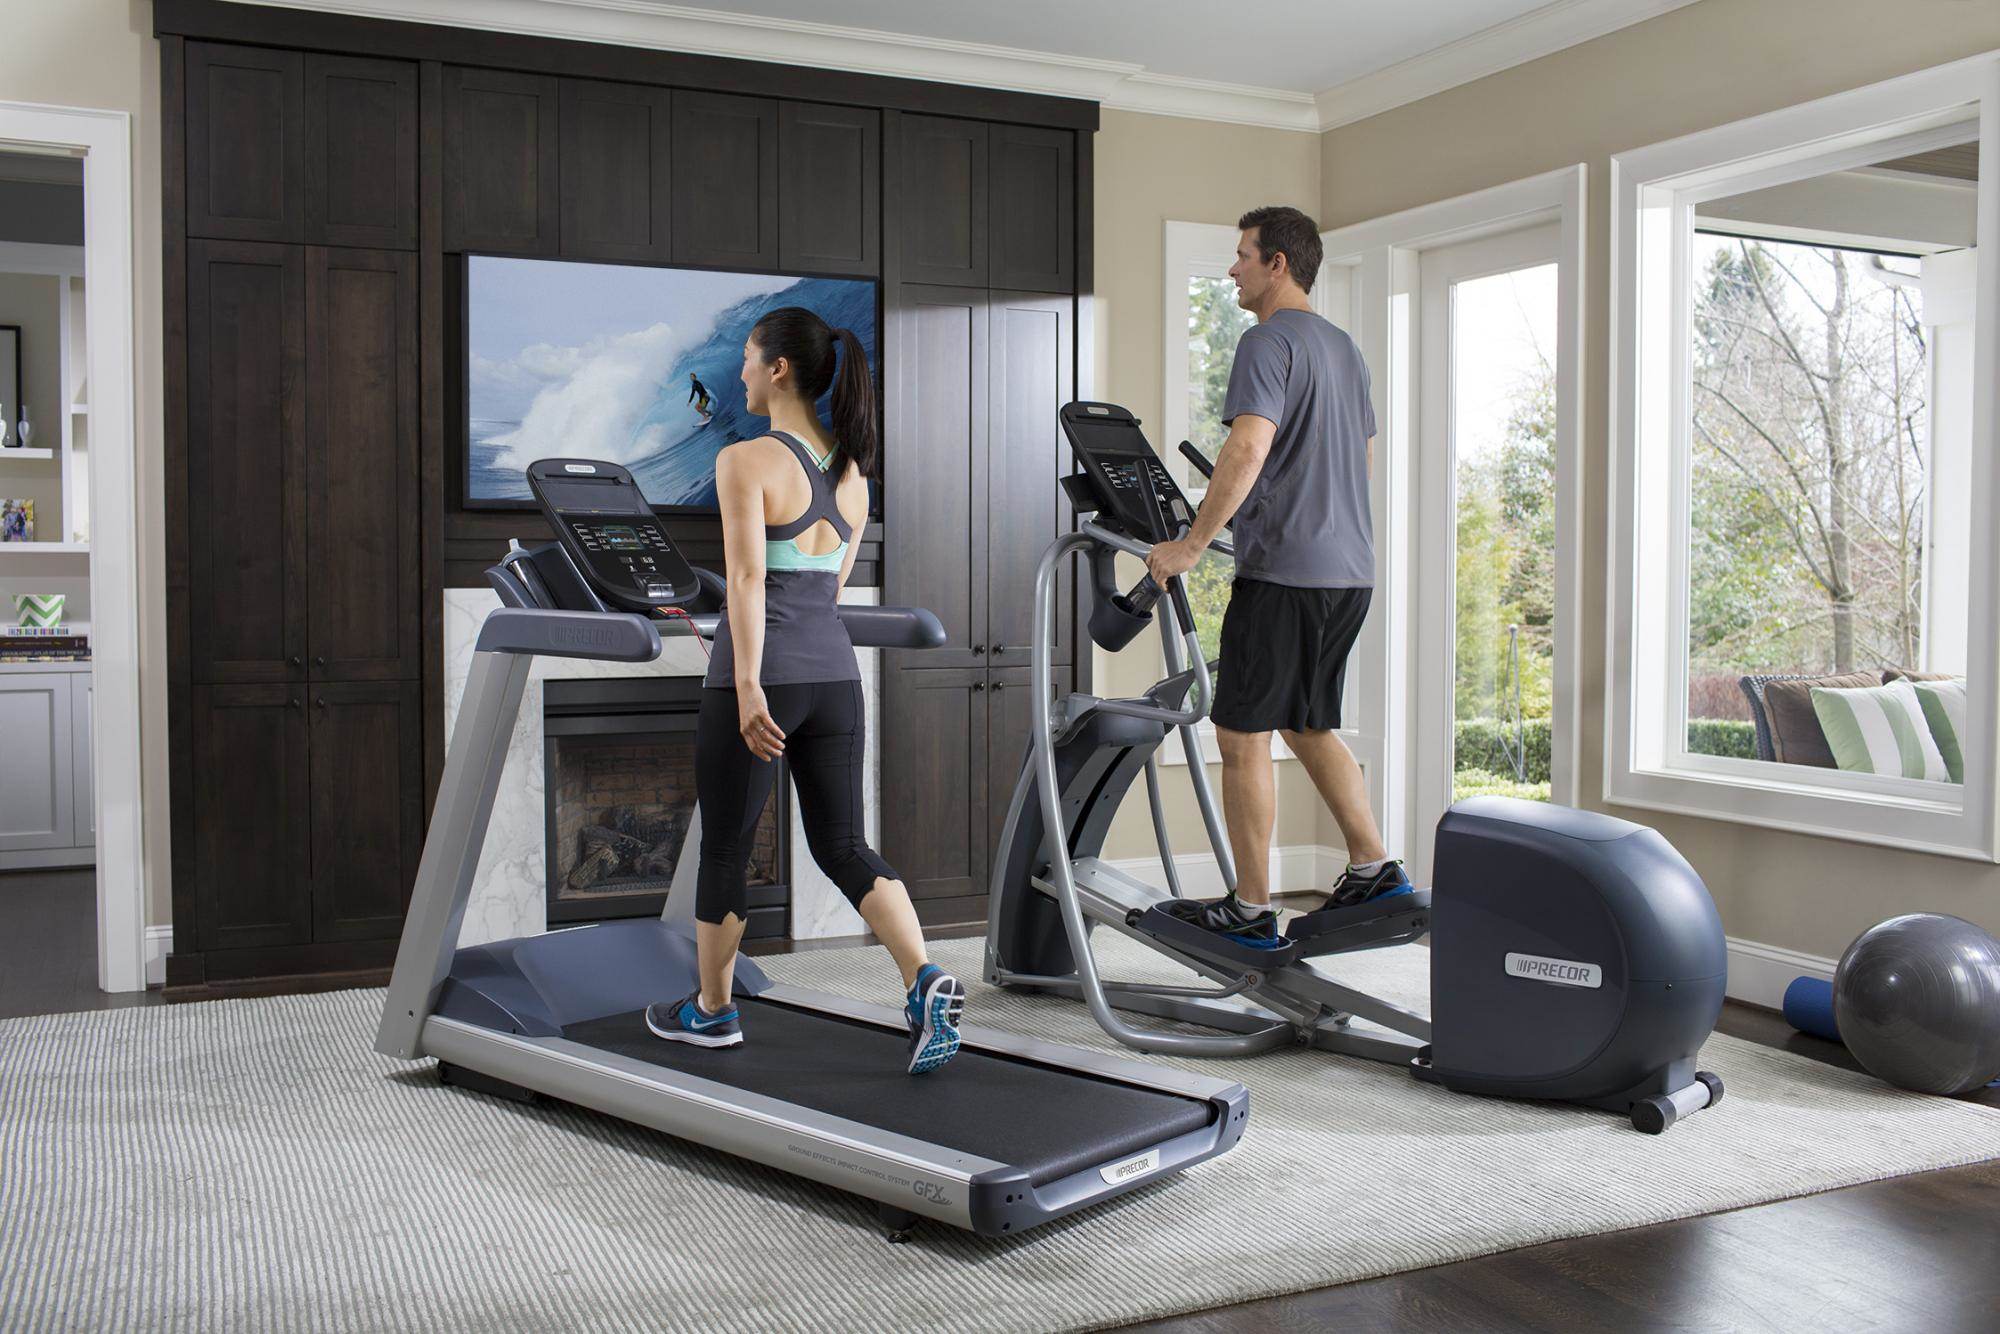 How To Start Precor Treadmill